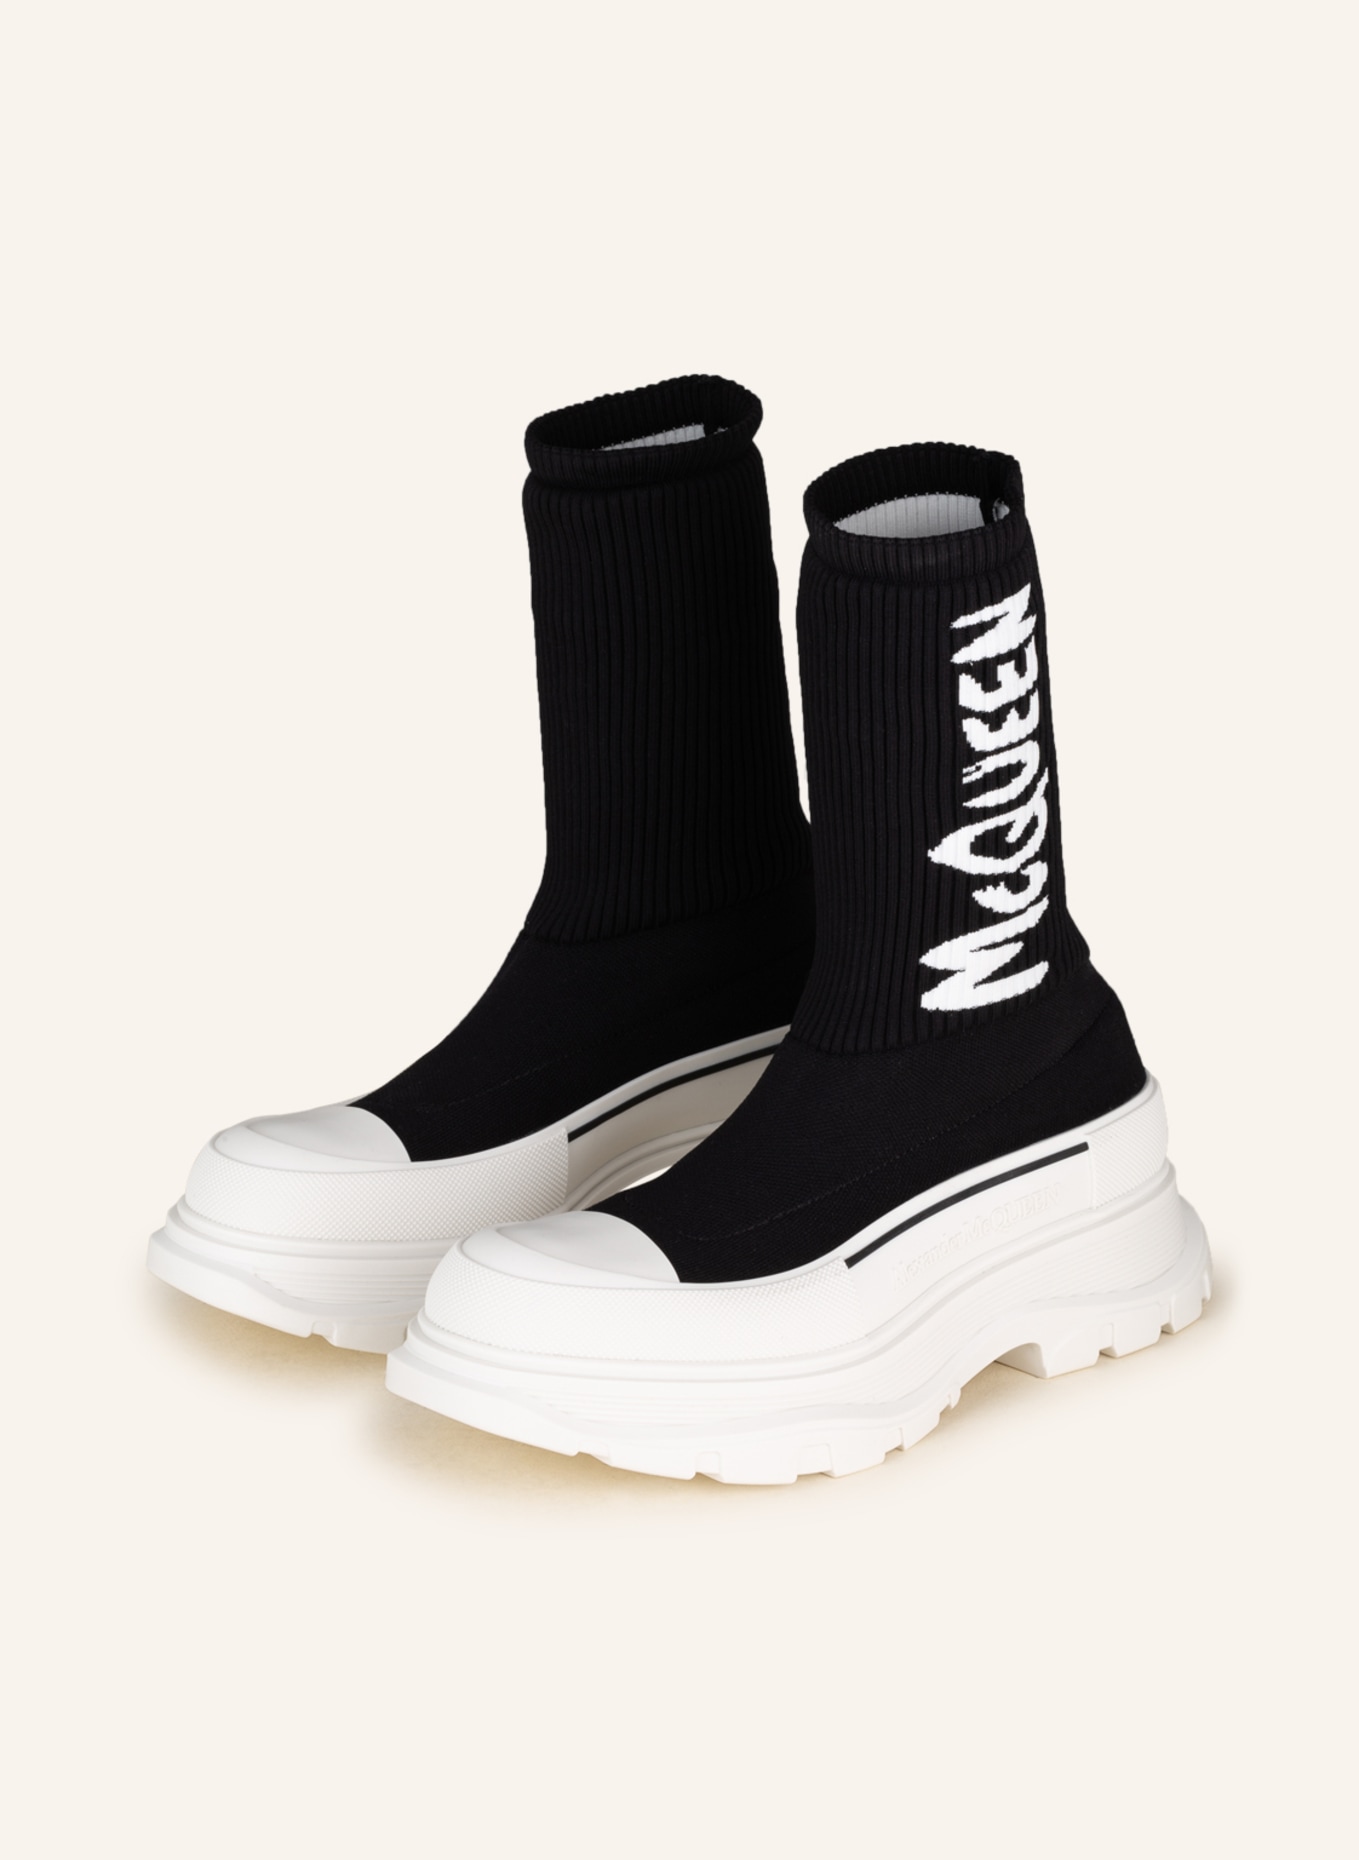 Alexander McQUEEN Hightop-Sneaker TREAD SLICK, Farbe: SCHWARZ/ WEISS (Bild 1)